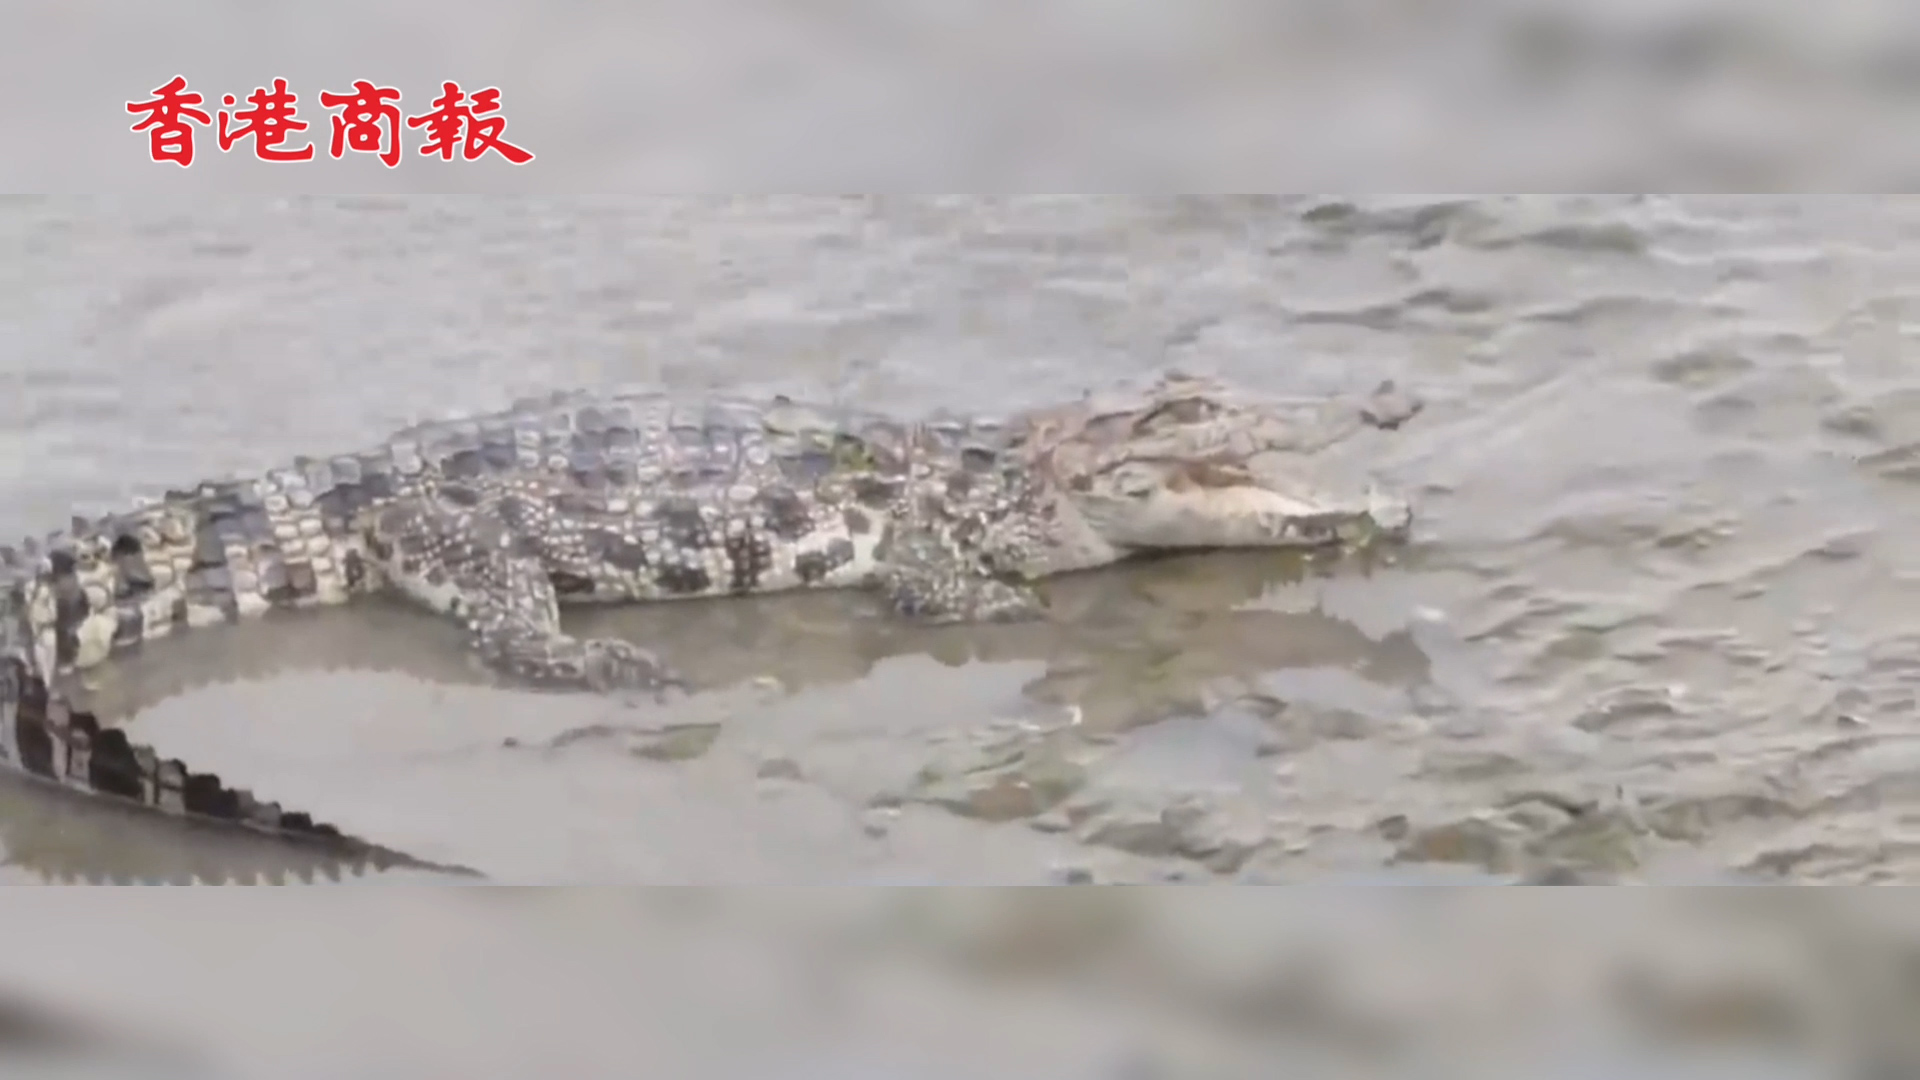 有片 |  上海黃浦江畔出沒的鱷魚被捕獲